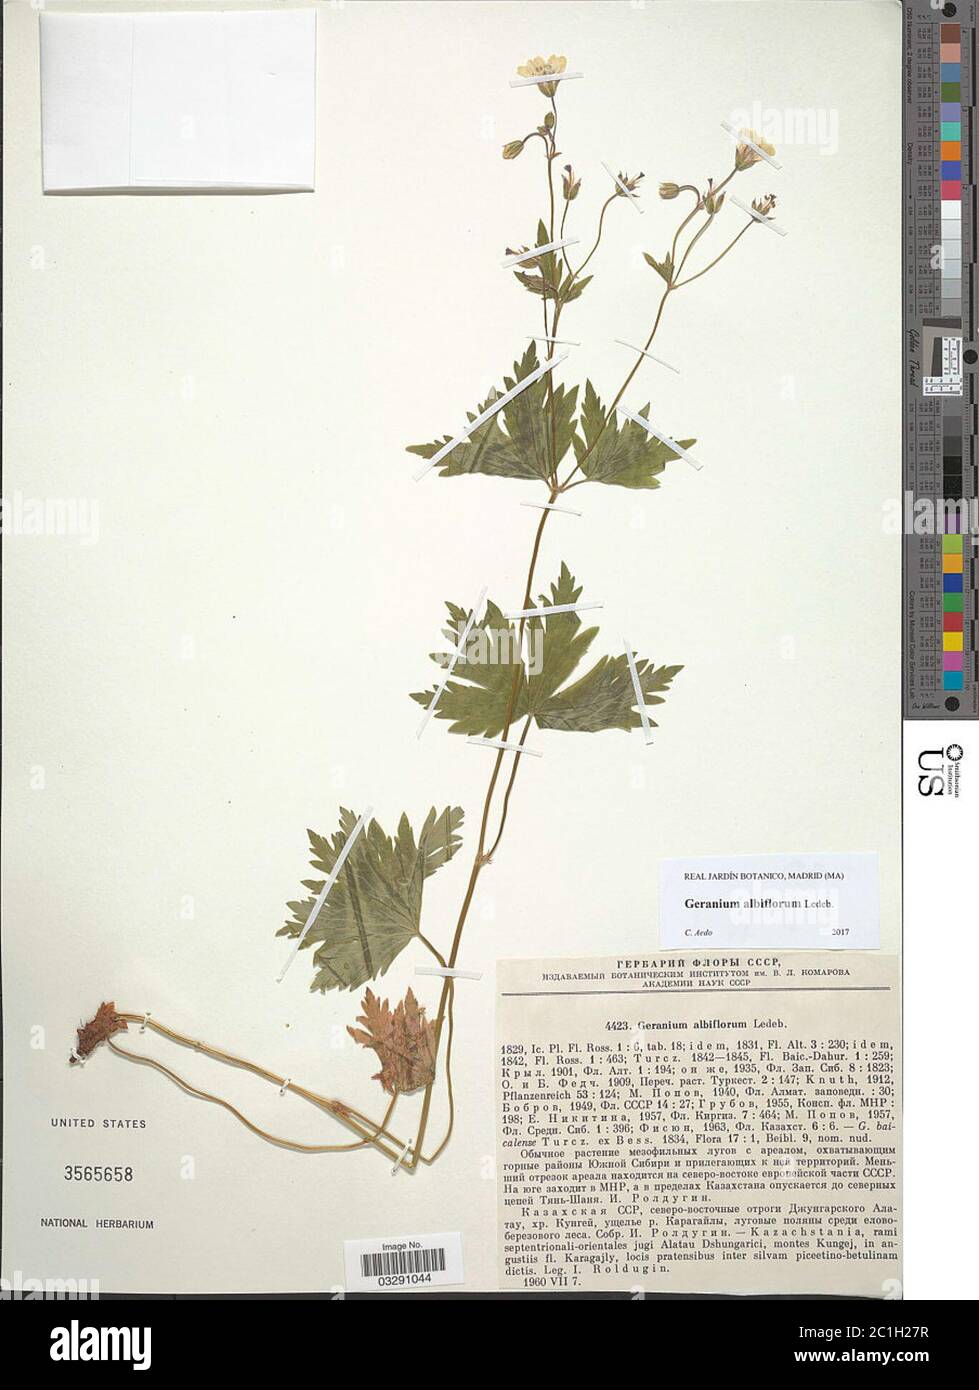 Geranium albiflorum Ledeb Geranium albiflorum Ledeb. Stock Photo